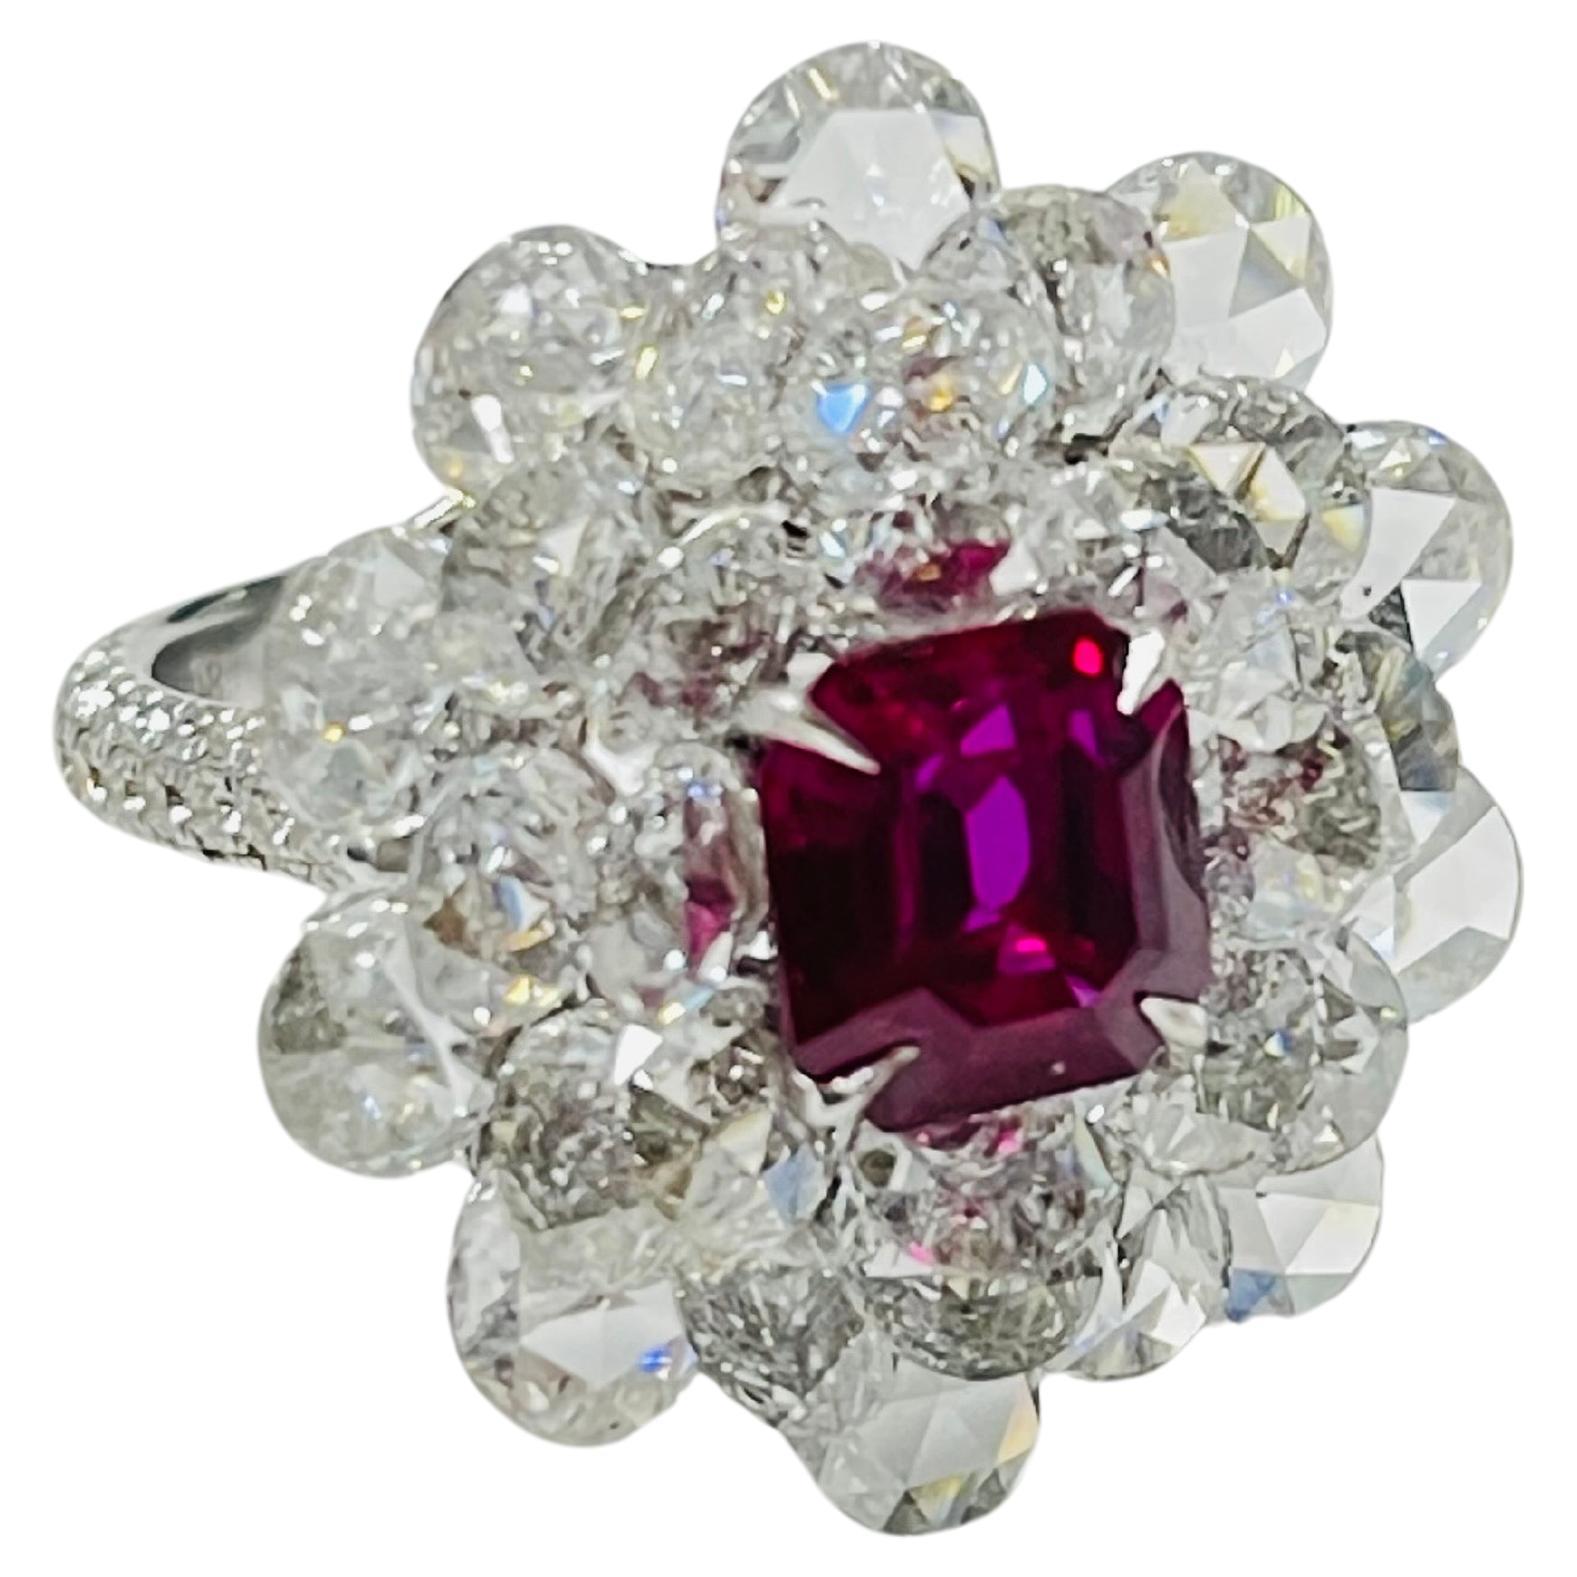 Diese wirklich ein von einer Art Ring Features Gublin und GIA zertifiziert herrlichen Burma unheated 3,15 Karat Ruby eingebettet in ein Bett von schönen weißen rosa geschliffenen Diamanten mit einem Gewicht von 4,54 Karat /20 (4,7 mm) und 3,04 Karat